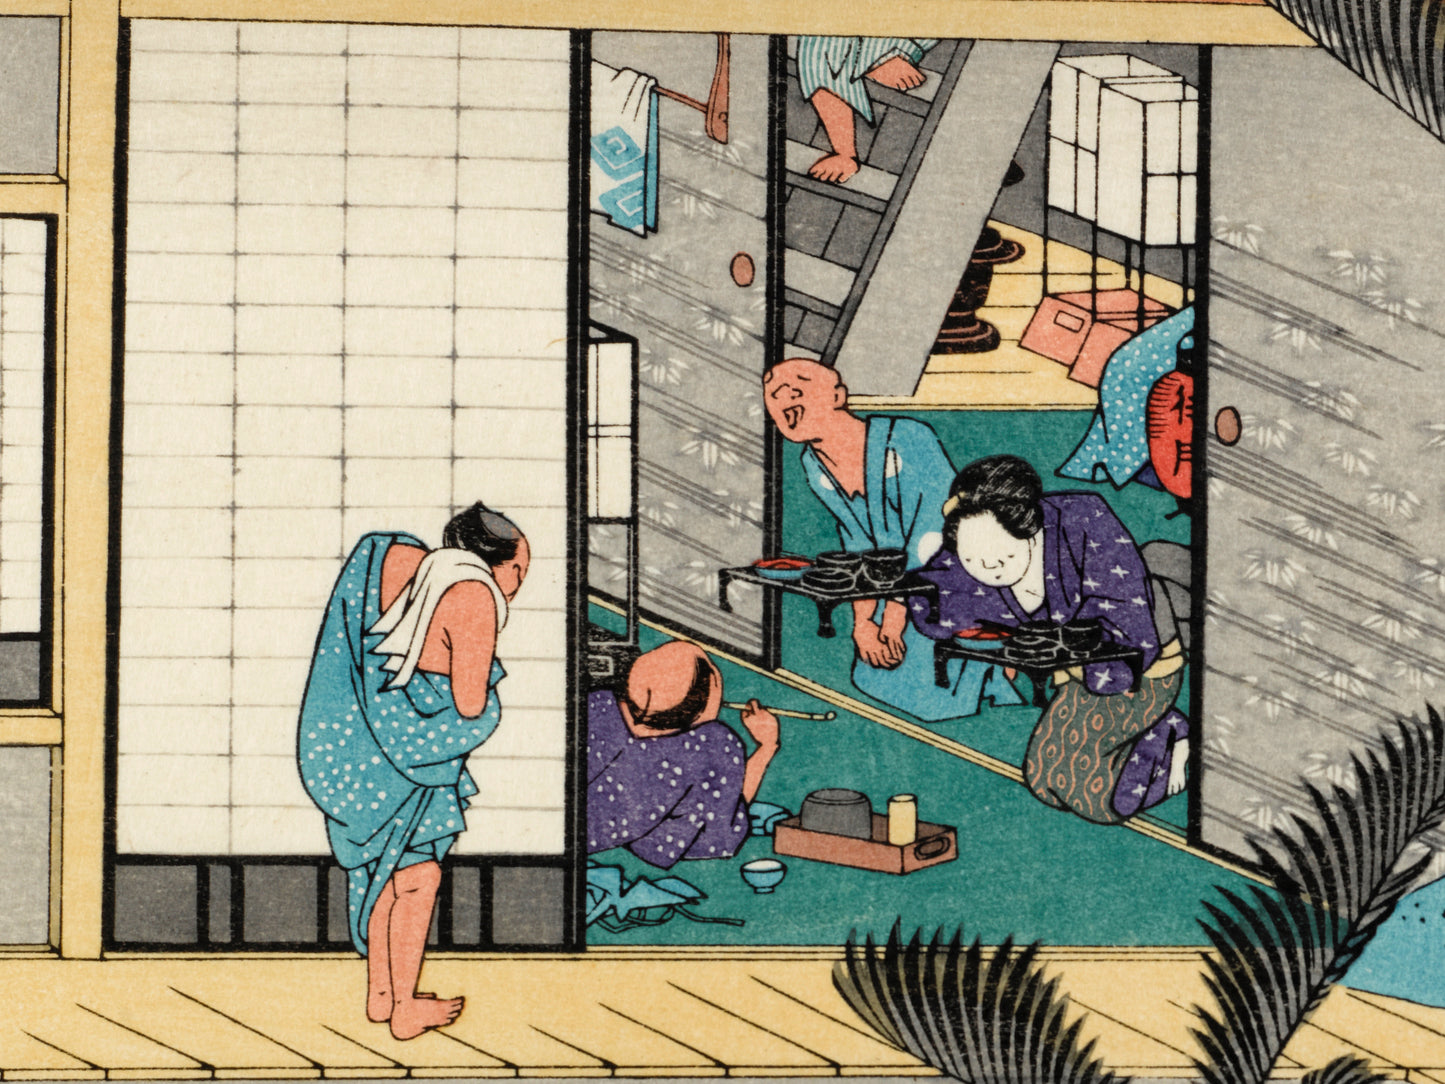 estampe japonaise intérieur d'une auberge avec voyageurs et geishas, service d'un repas